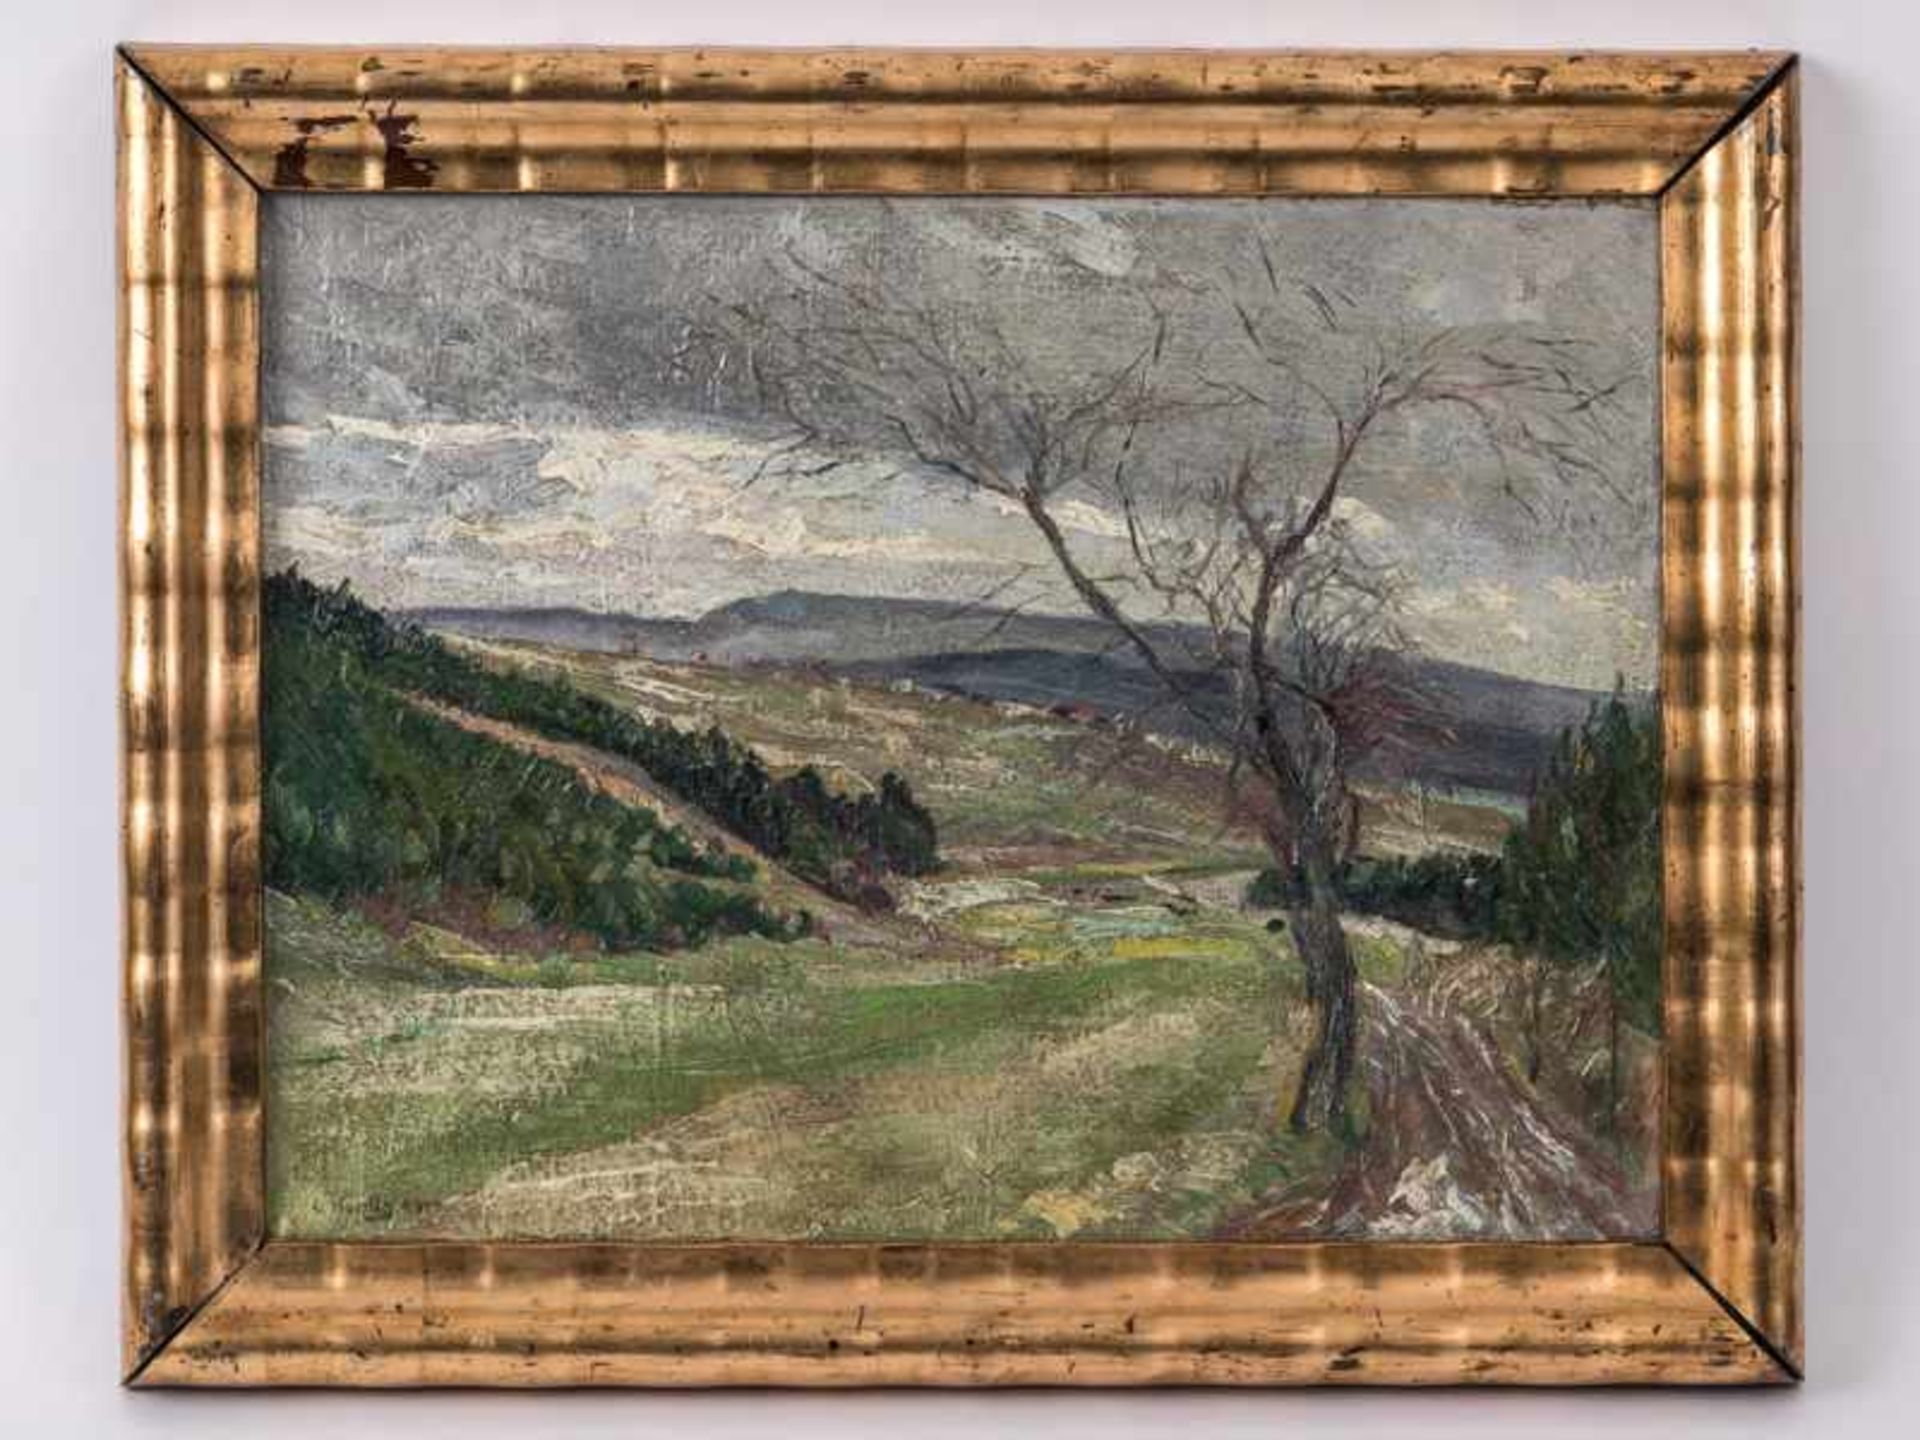 Höhlig, Georg (1879 - 1940). Öl auf Leinwand. "Landschaft bei Adorf", 1919 (bzw. 1929 ?);